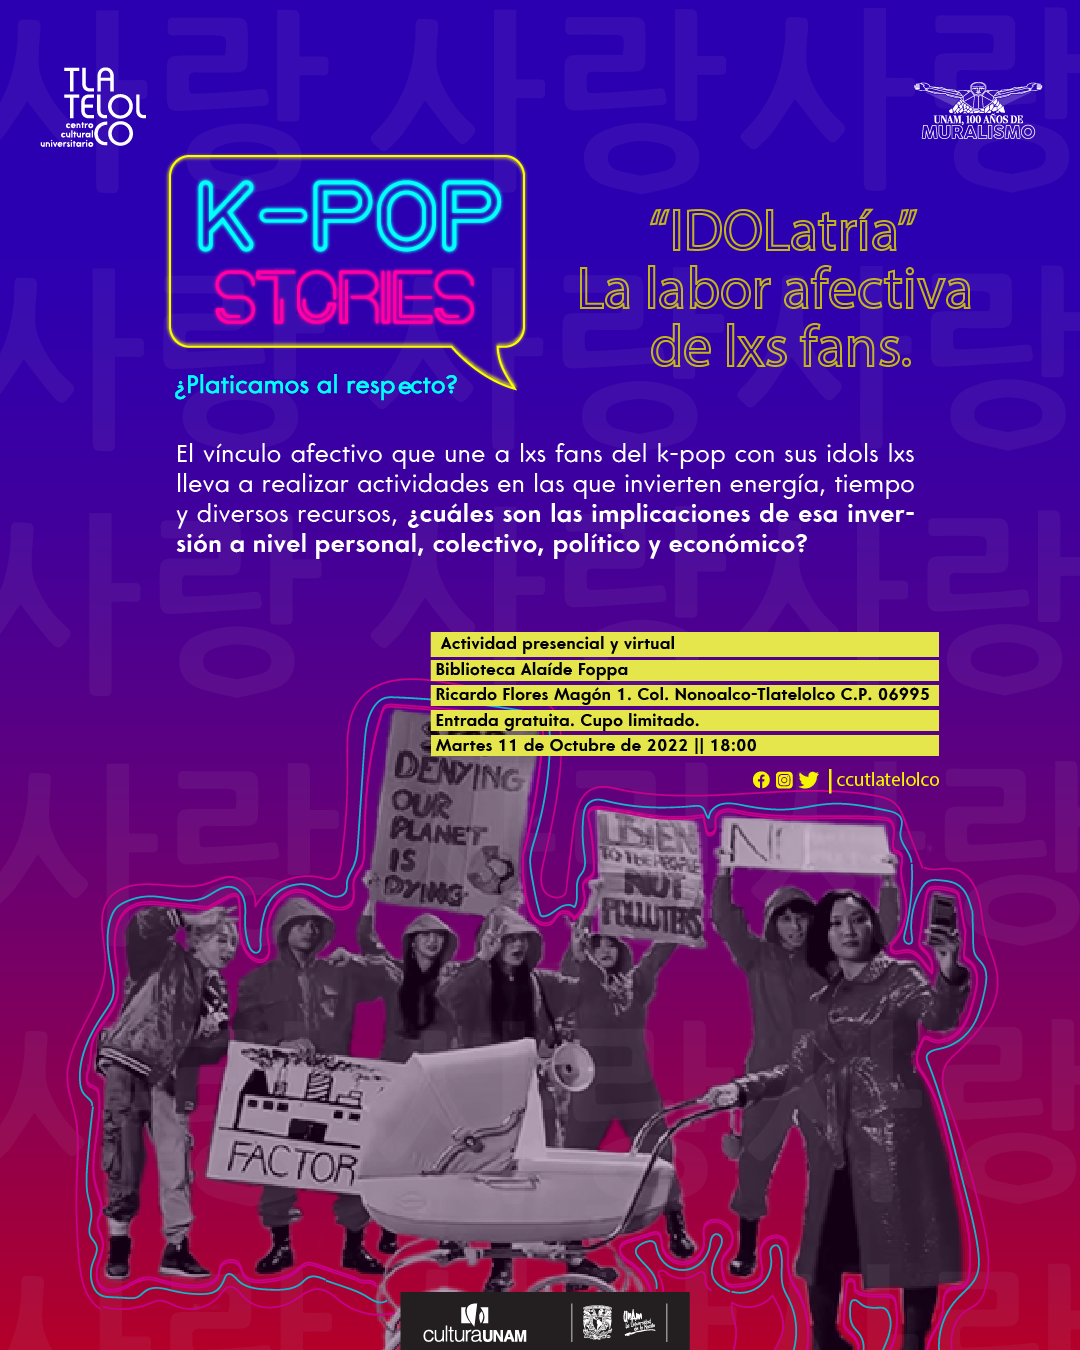 K-POP STORIES  IDOLatría”  la labor afectiva de lxs fans